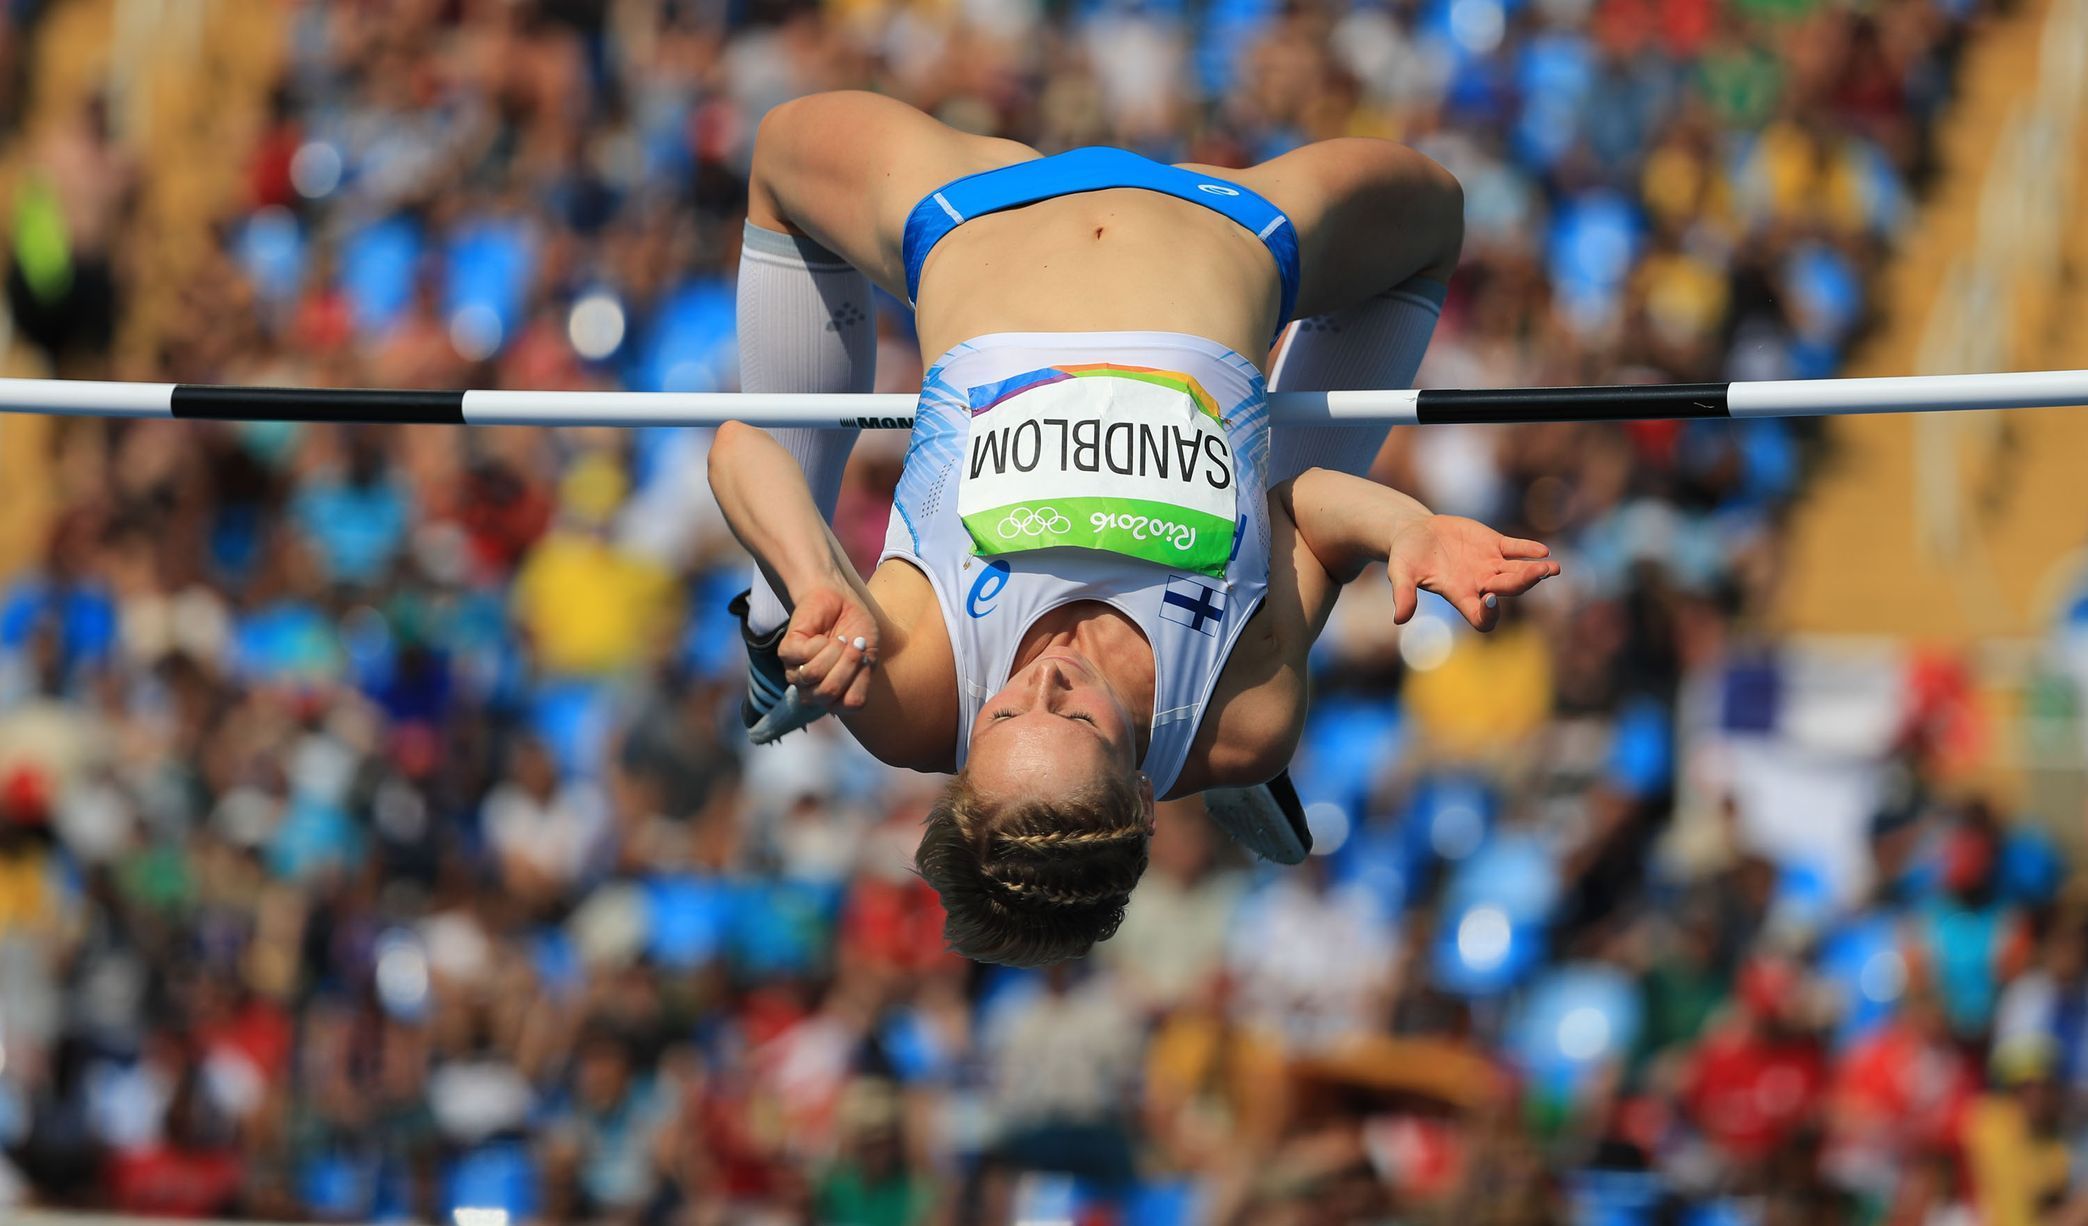 OH 2016 - atletika, skok do výšky Ž: Linda Sandblomová (FIN)